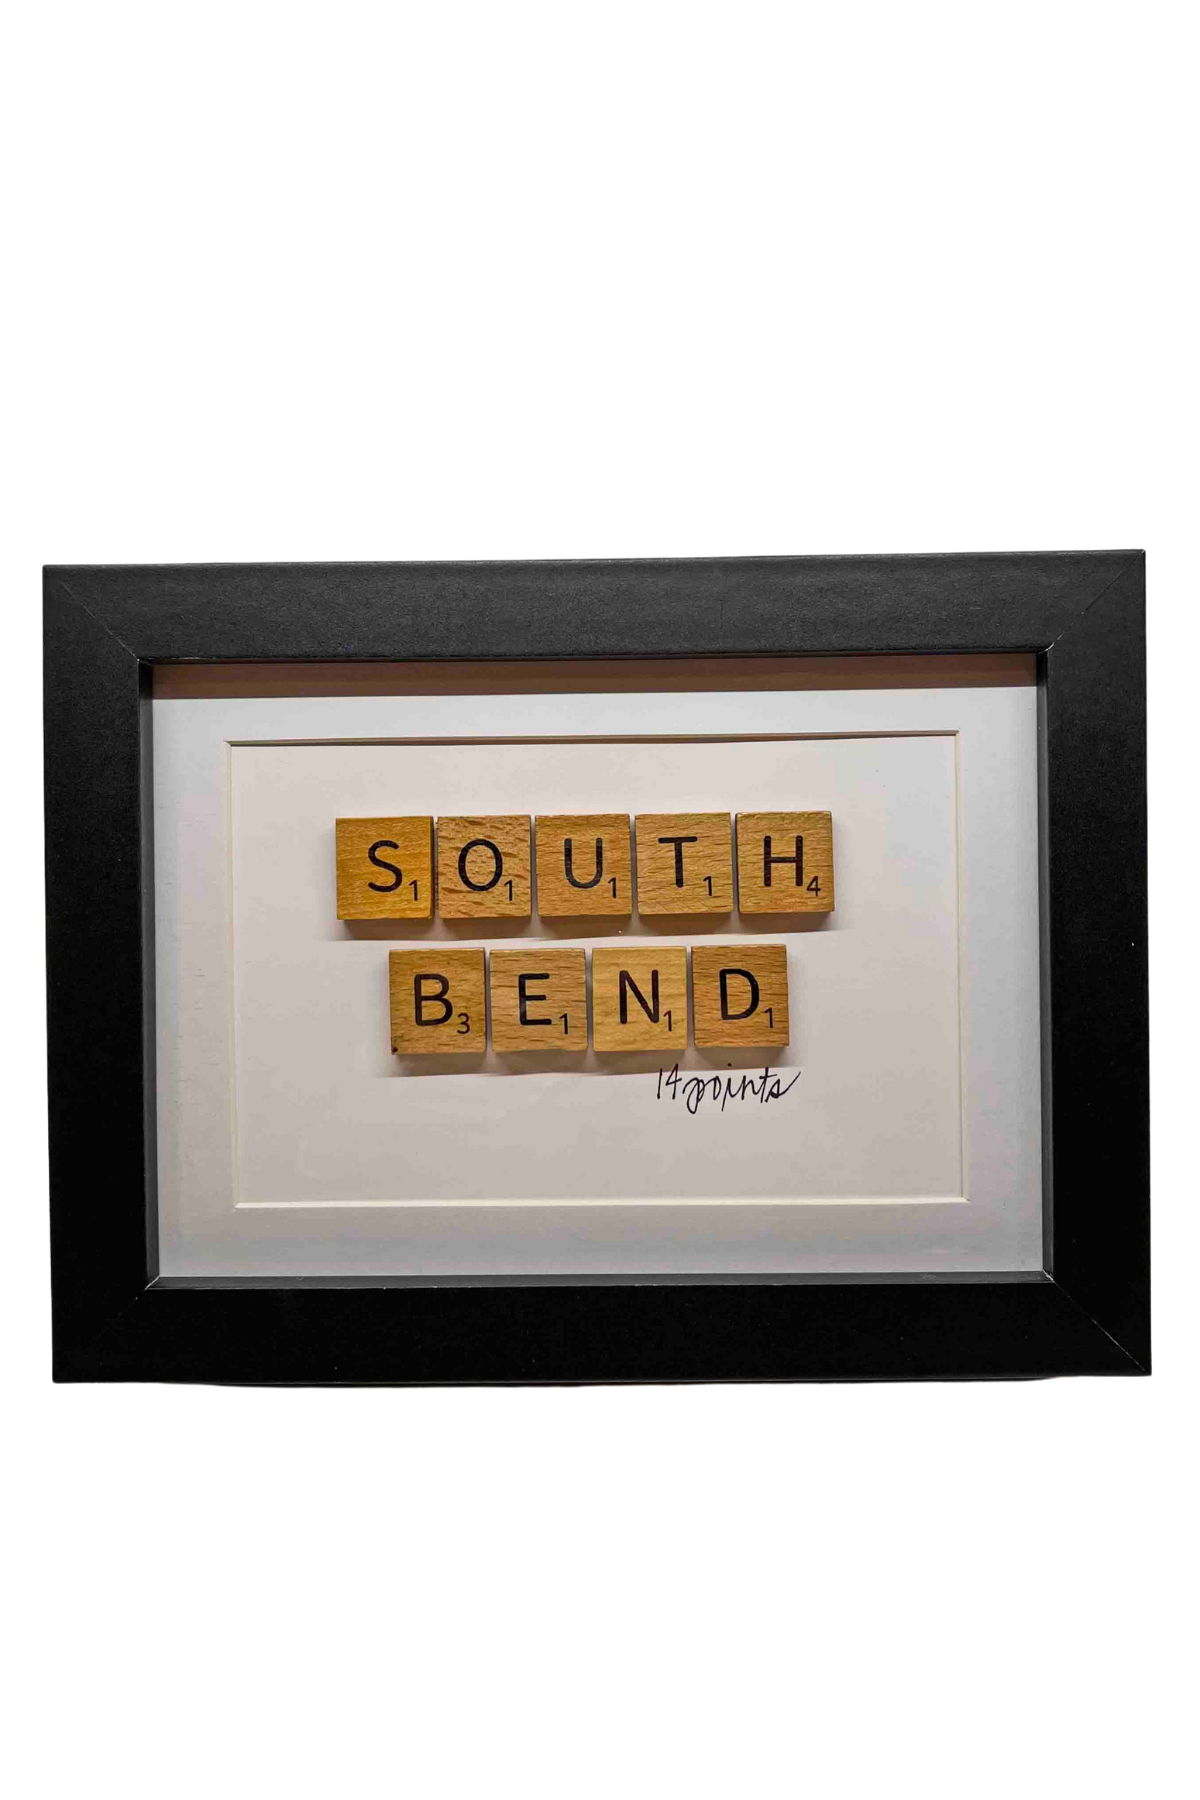 South Bend Scrabble Word Frame by Wordz in Framez